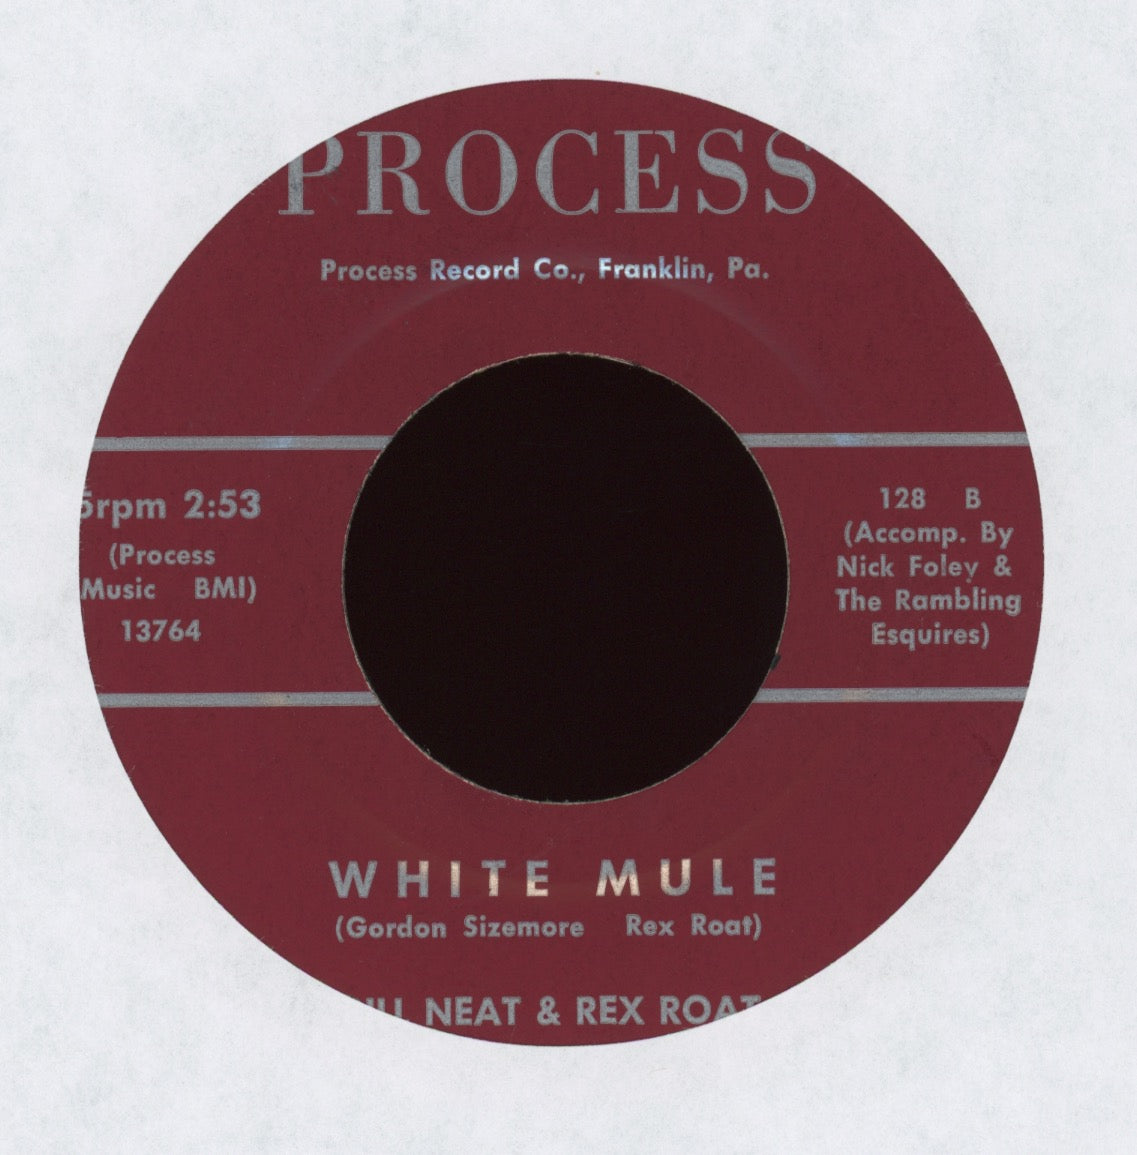 Bill Neat & Rex Roat - White Mule on Process